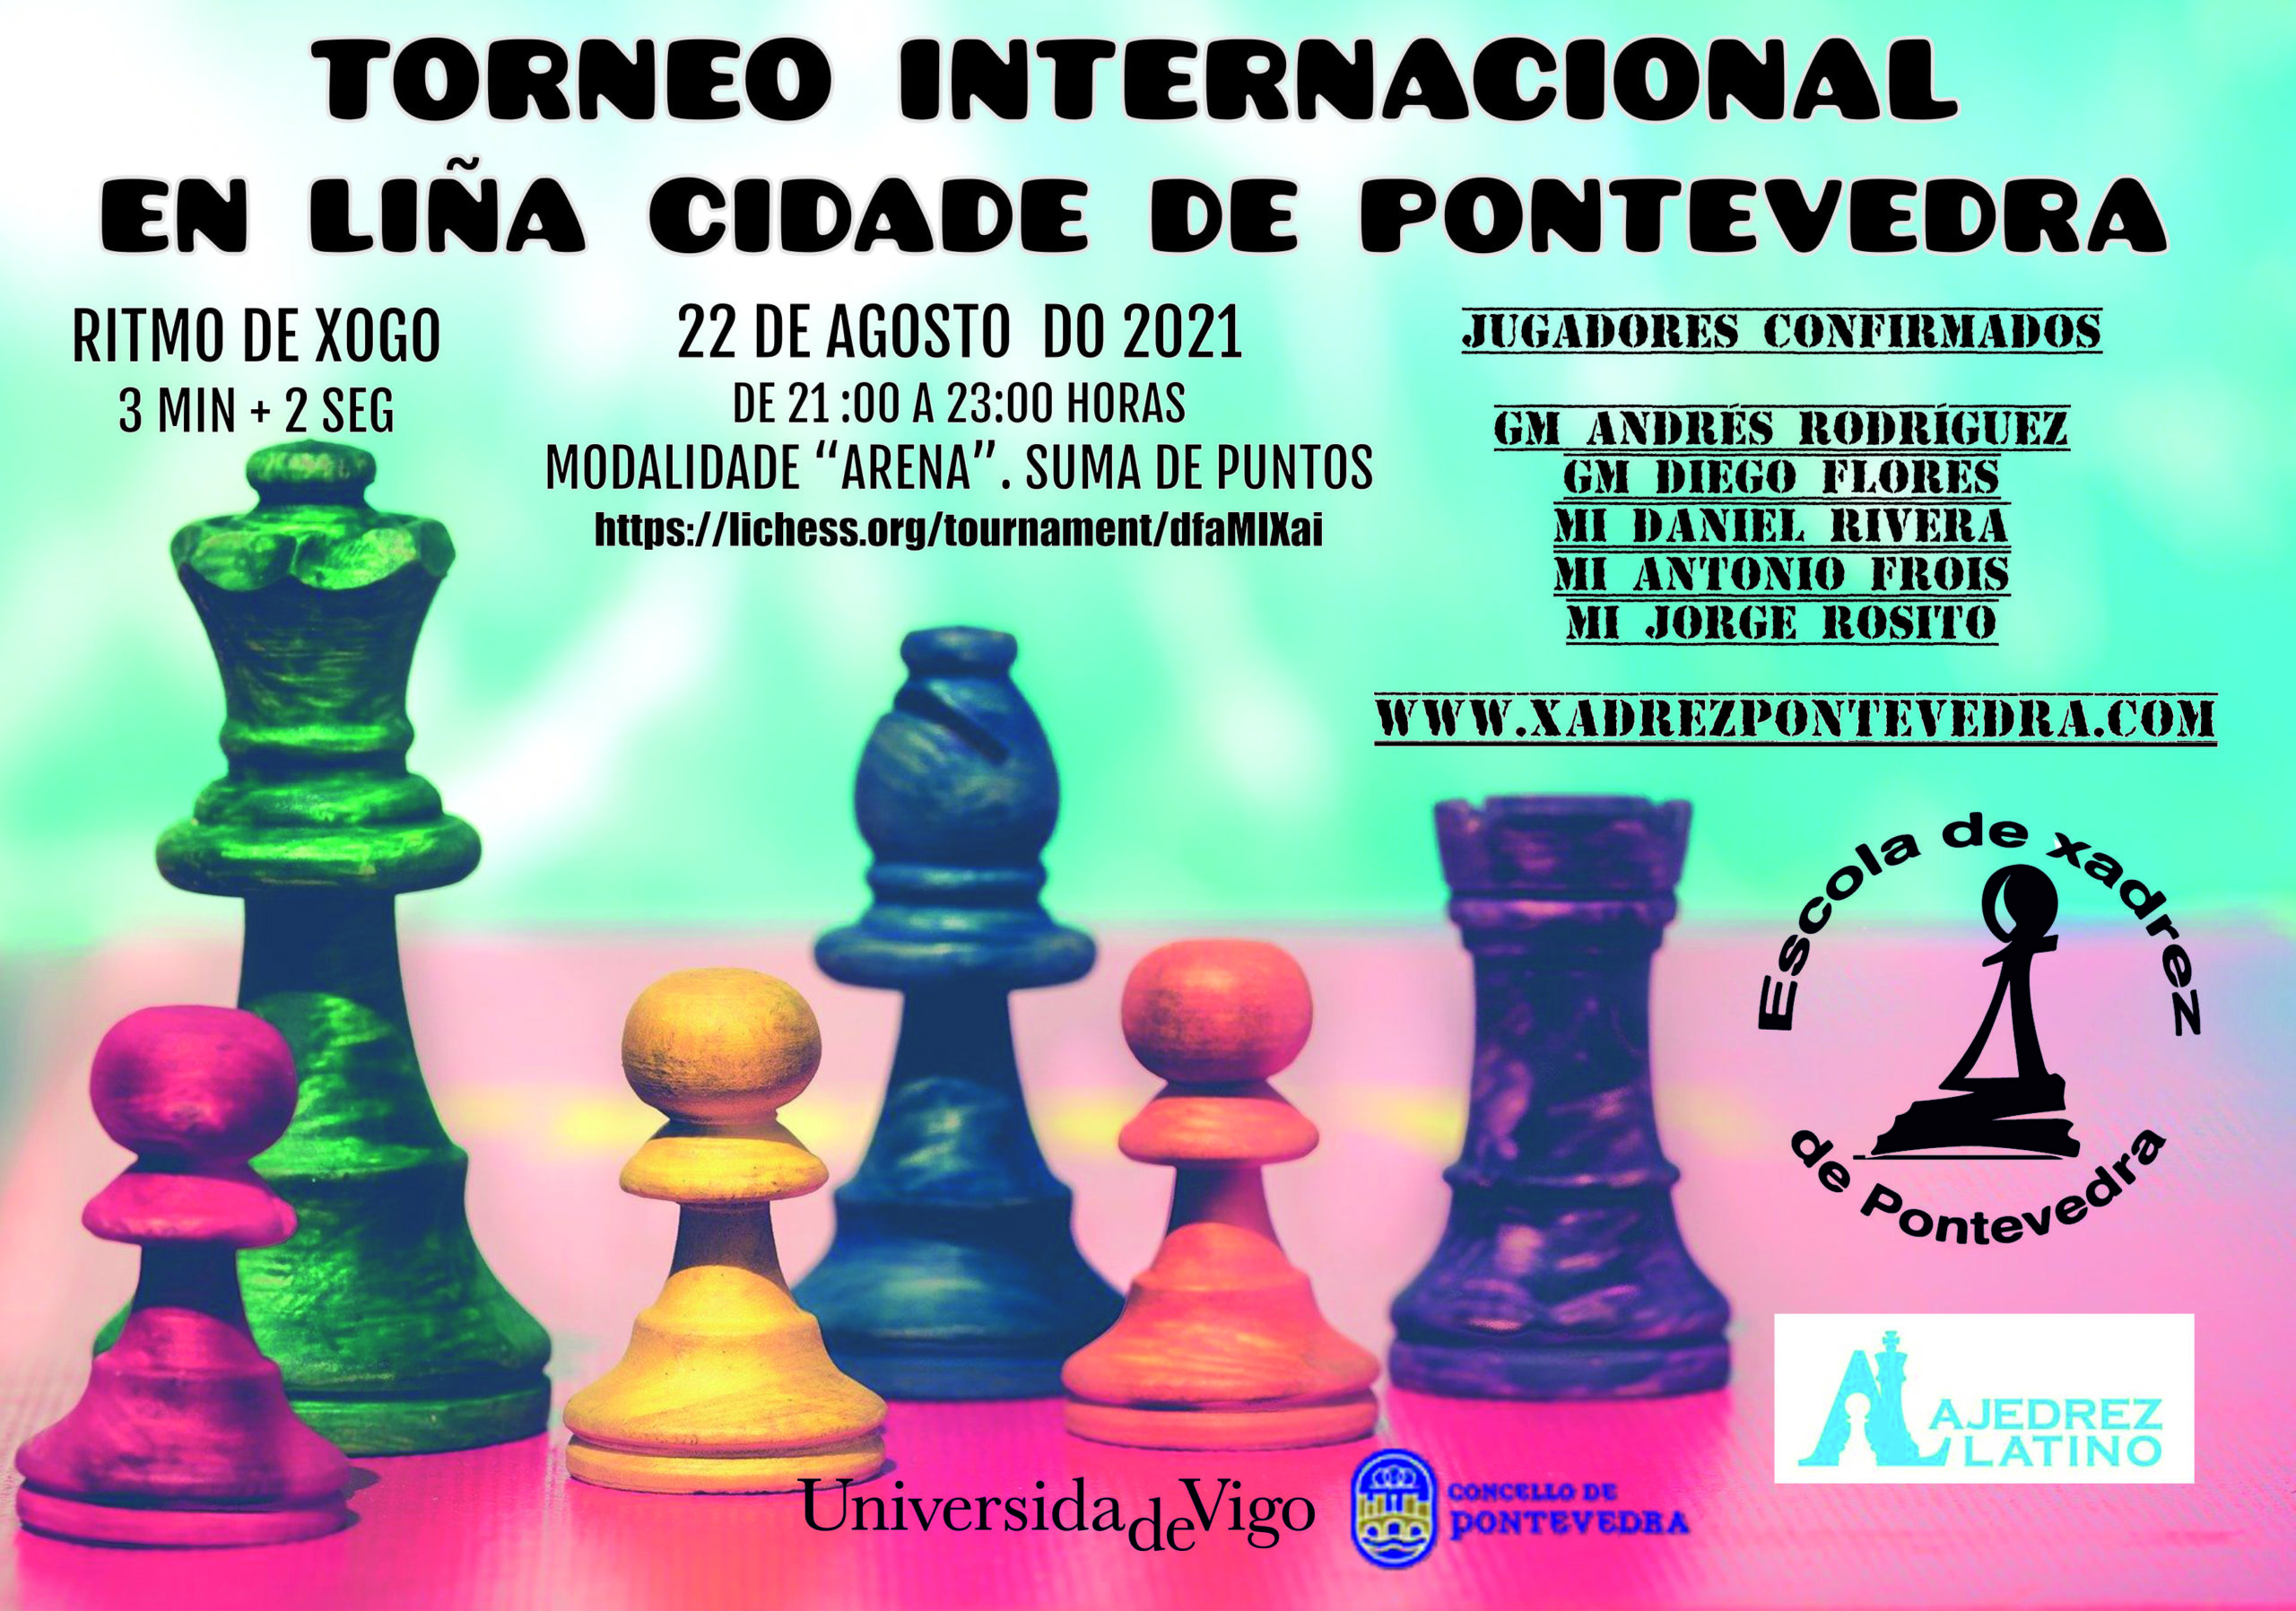 Torneo Internacional en línea Cidade de Pontevedra 2021